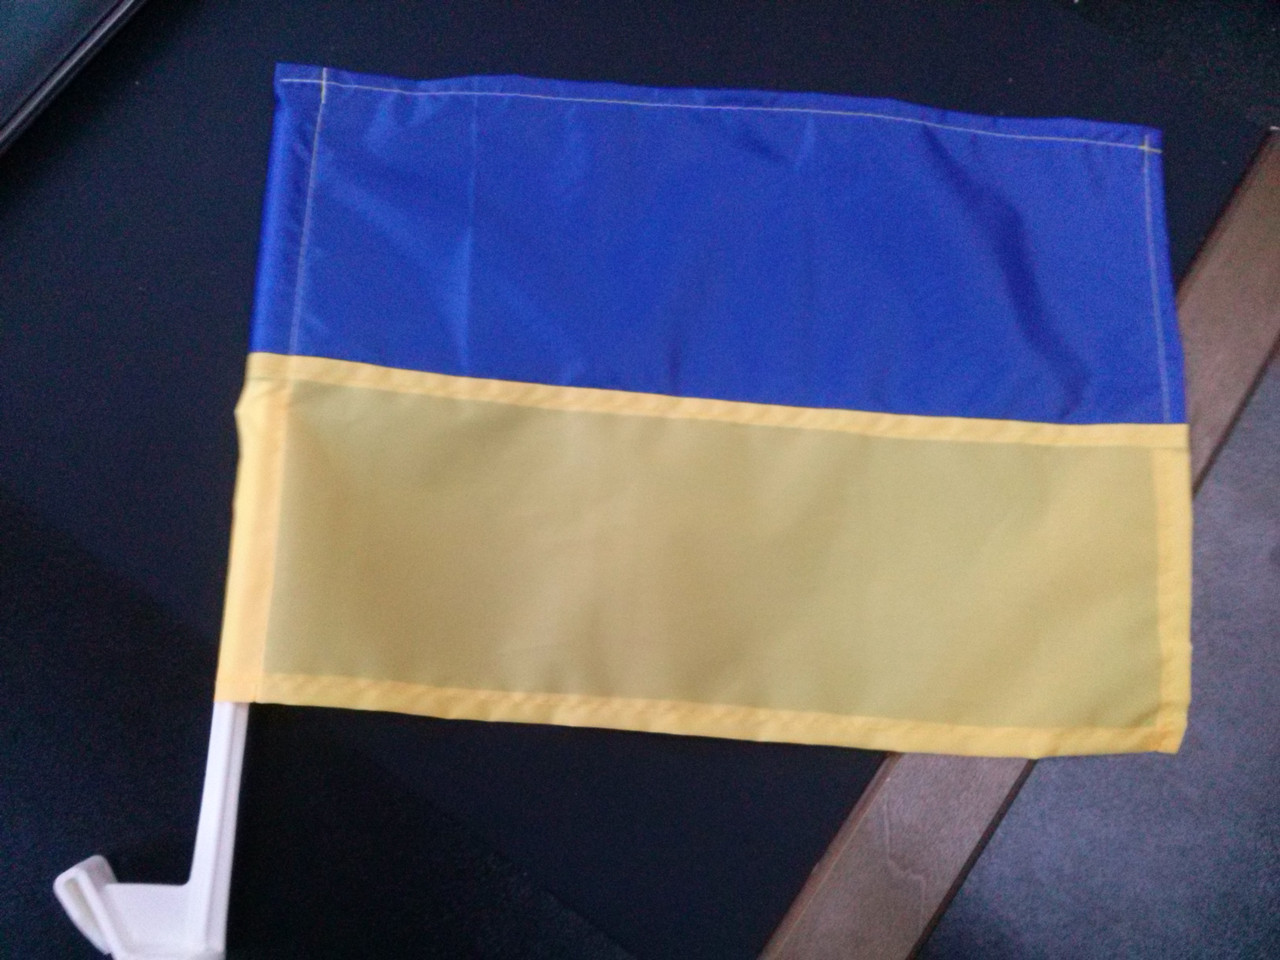 Автомобильный флаг Украины